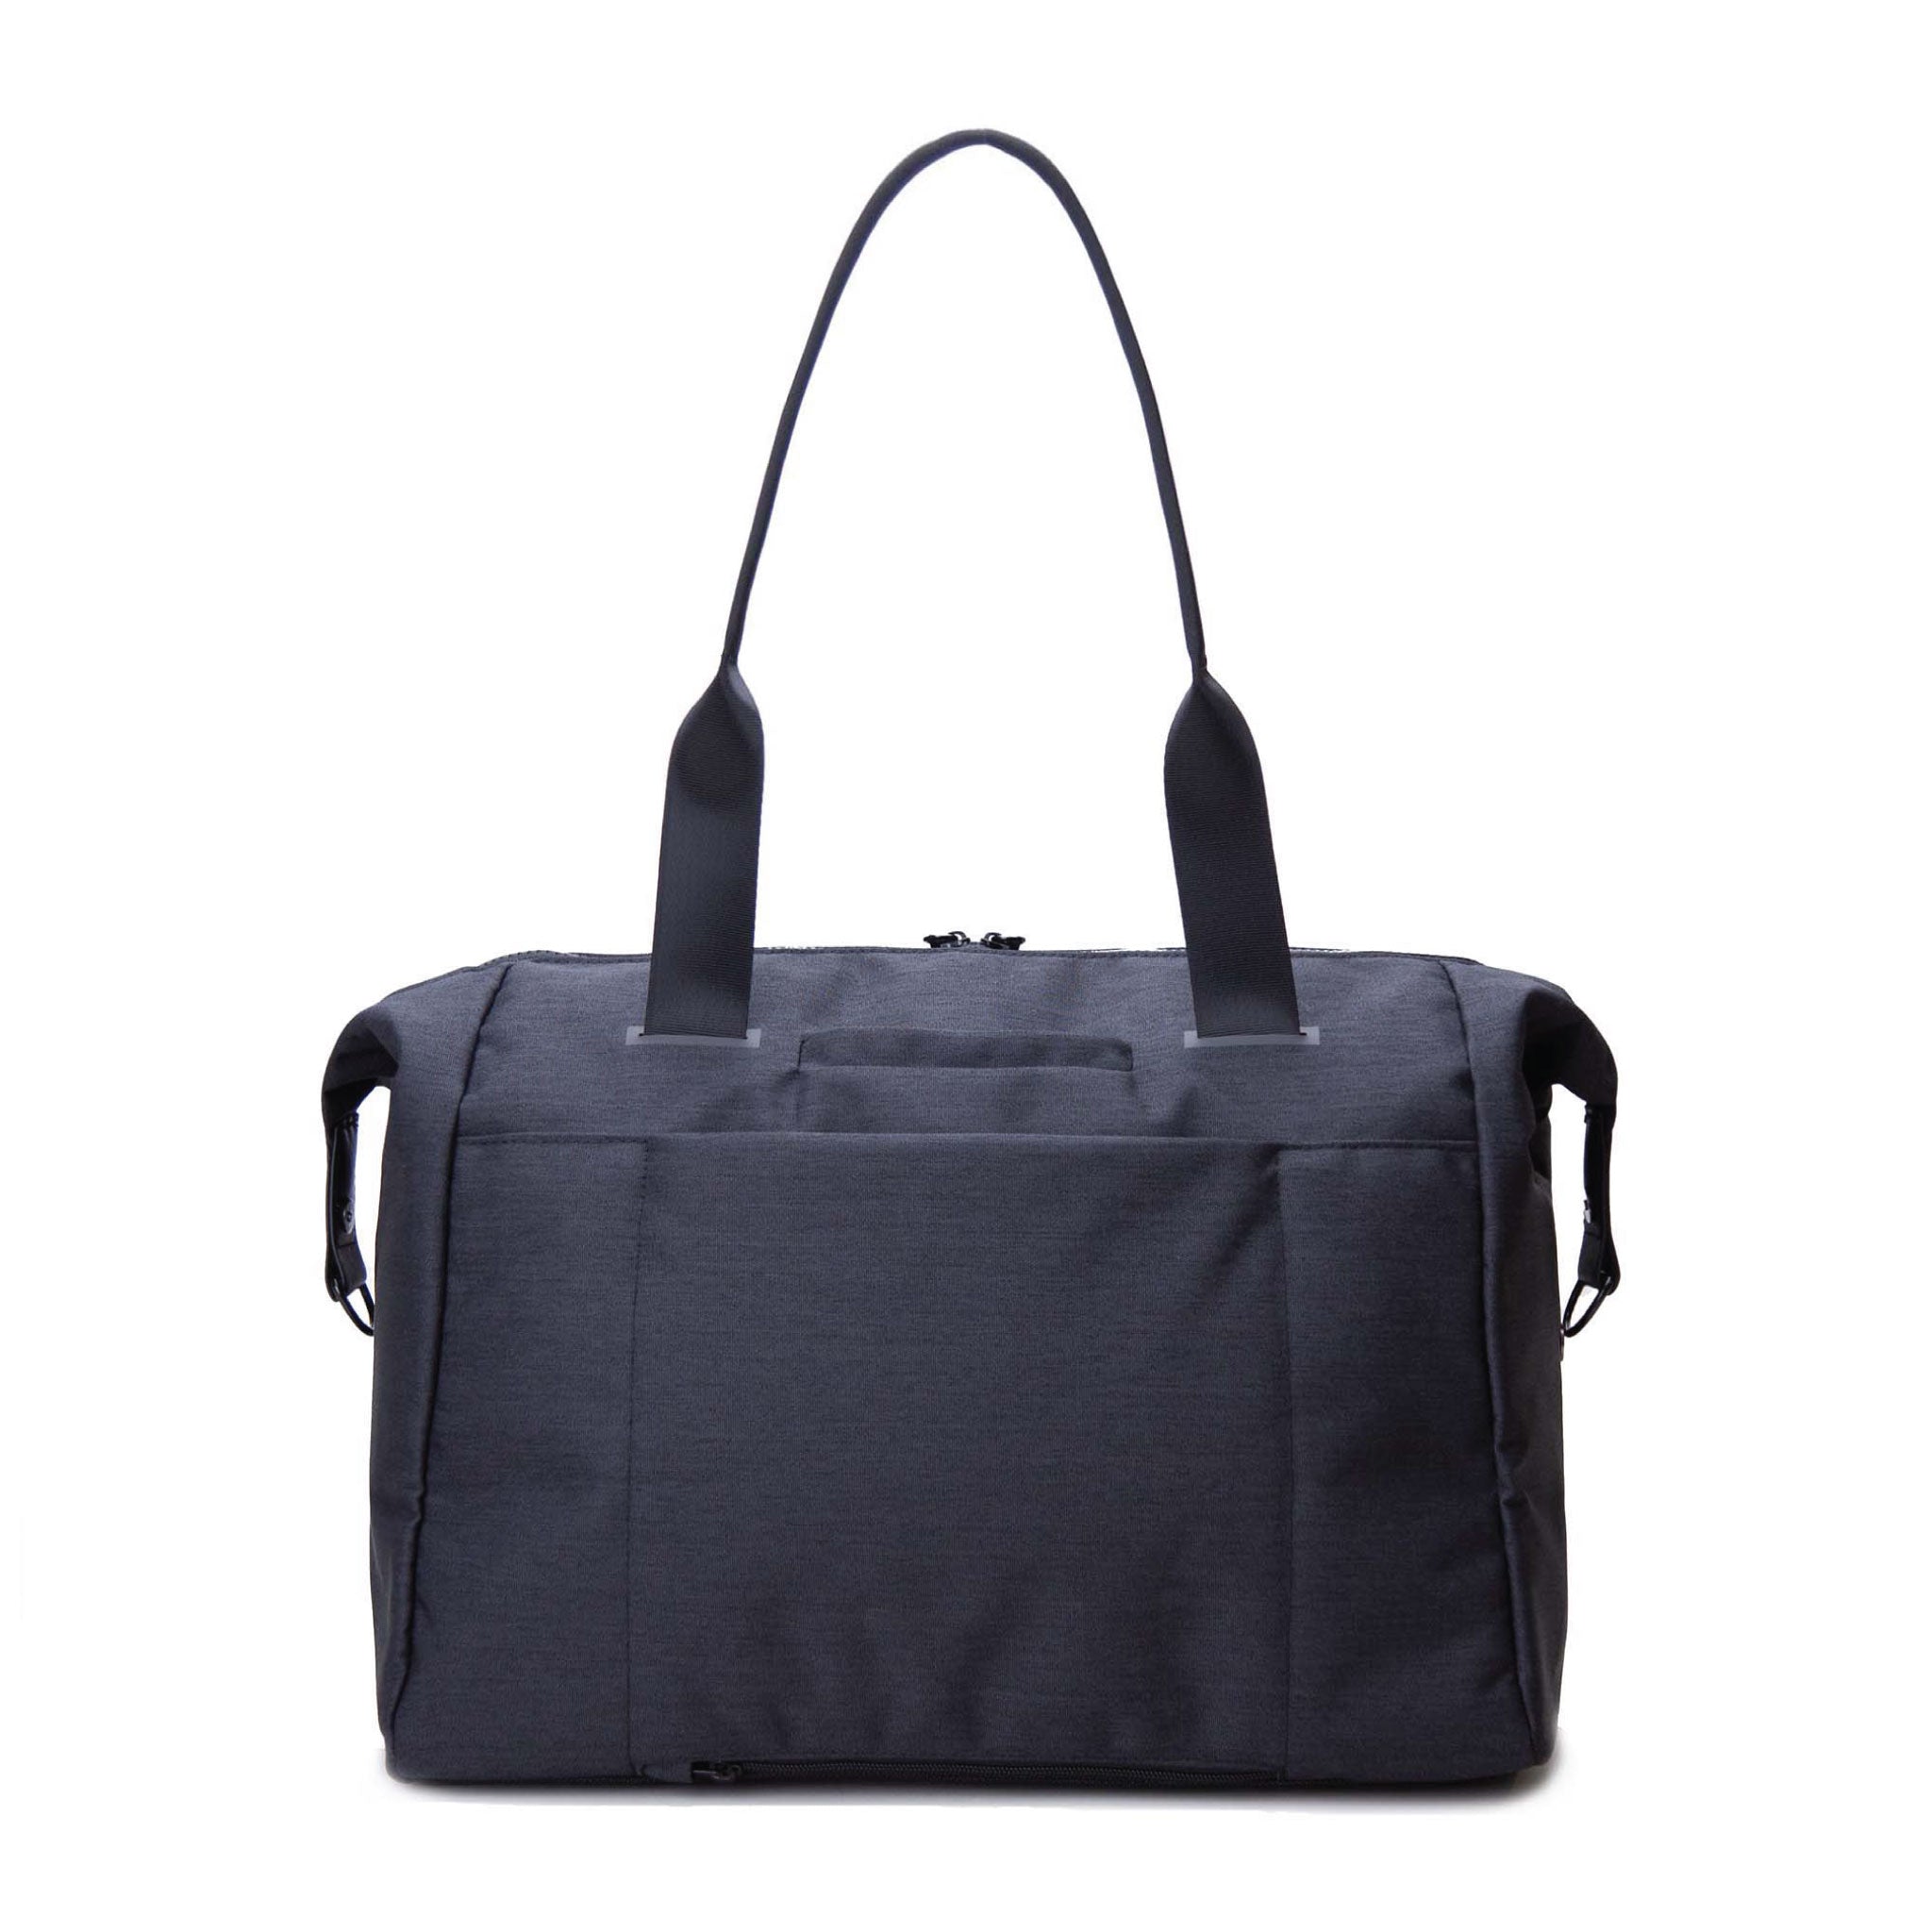 Vooray Alana Duffel Weekender - 25L - Travel Duffel Weekender & Gym Bag with Laptop Sleeve, Shoe Pocket & Dry pocket ()